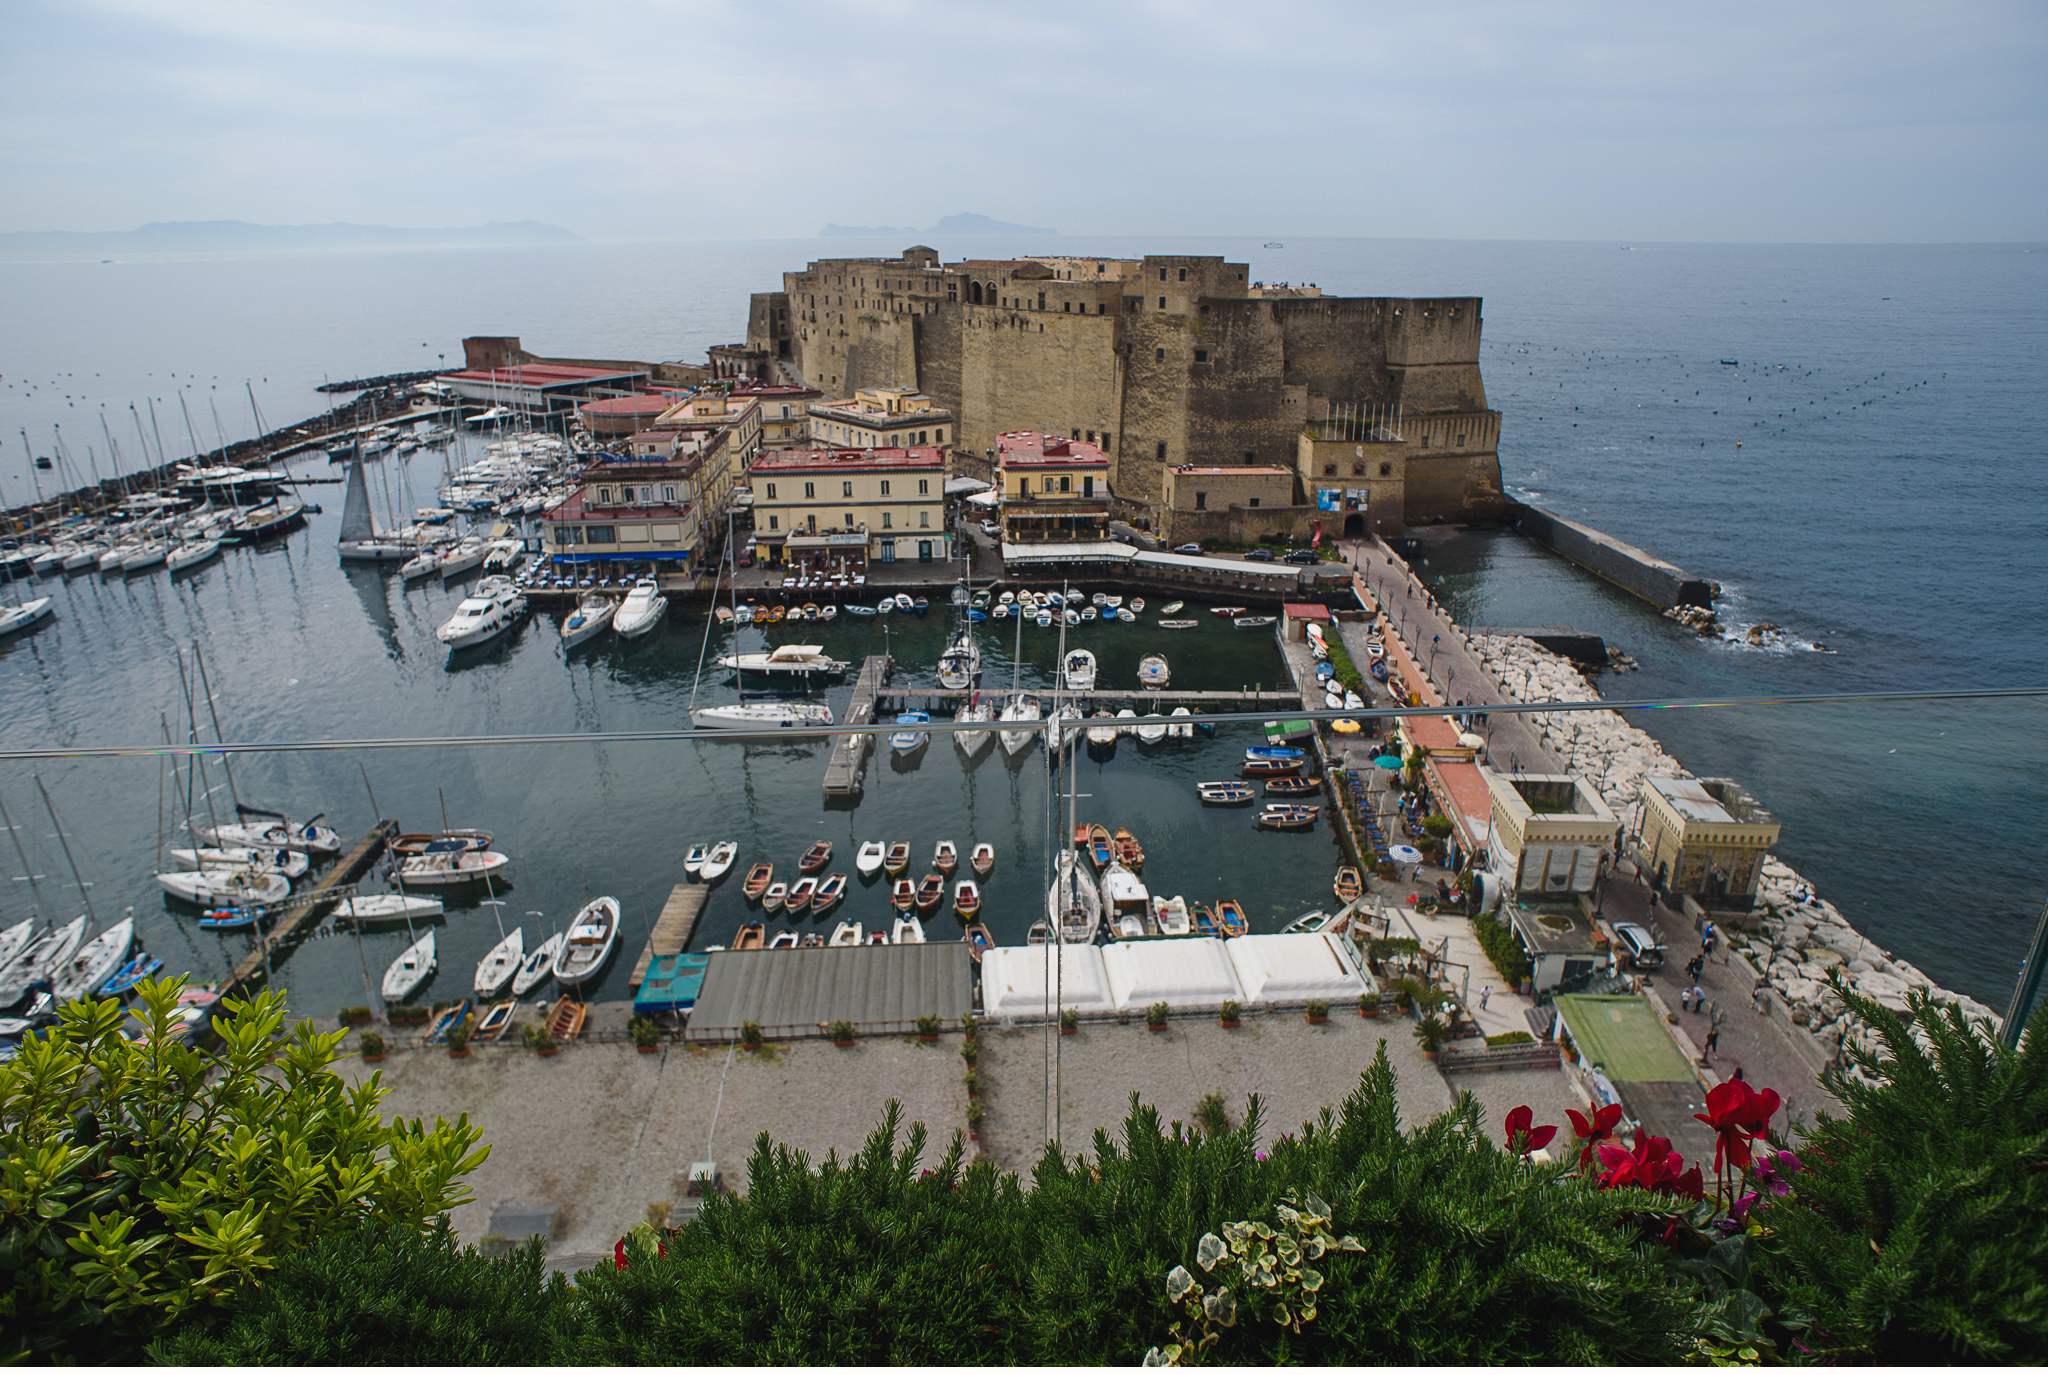 Grand Hotel Vesuvio Napoli, Neapel - Geschichten von unterwegs by Marion and Daniel-20